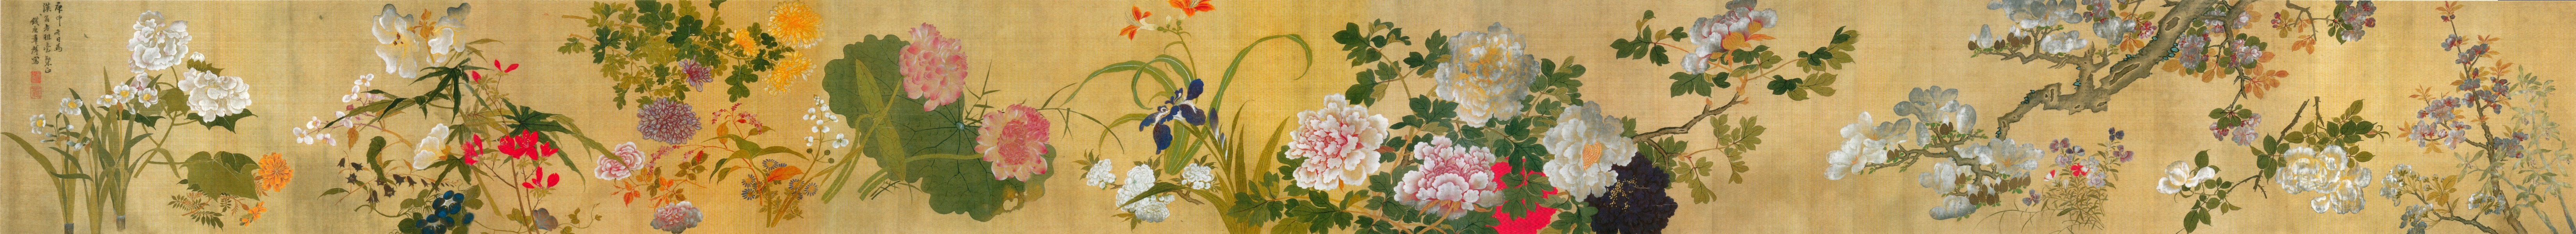 折枝花卉图卷